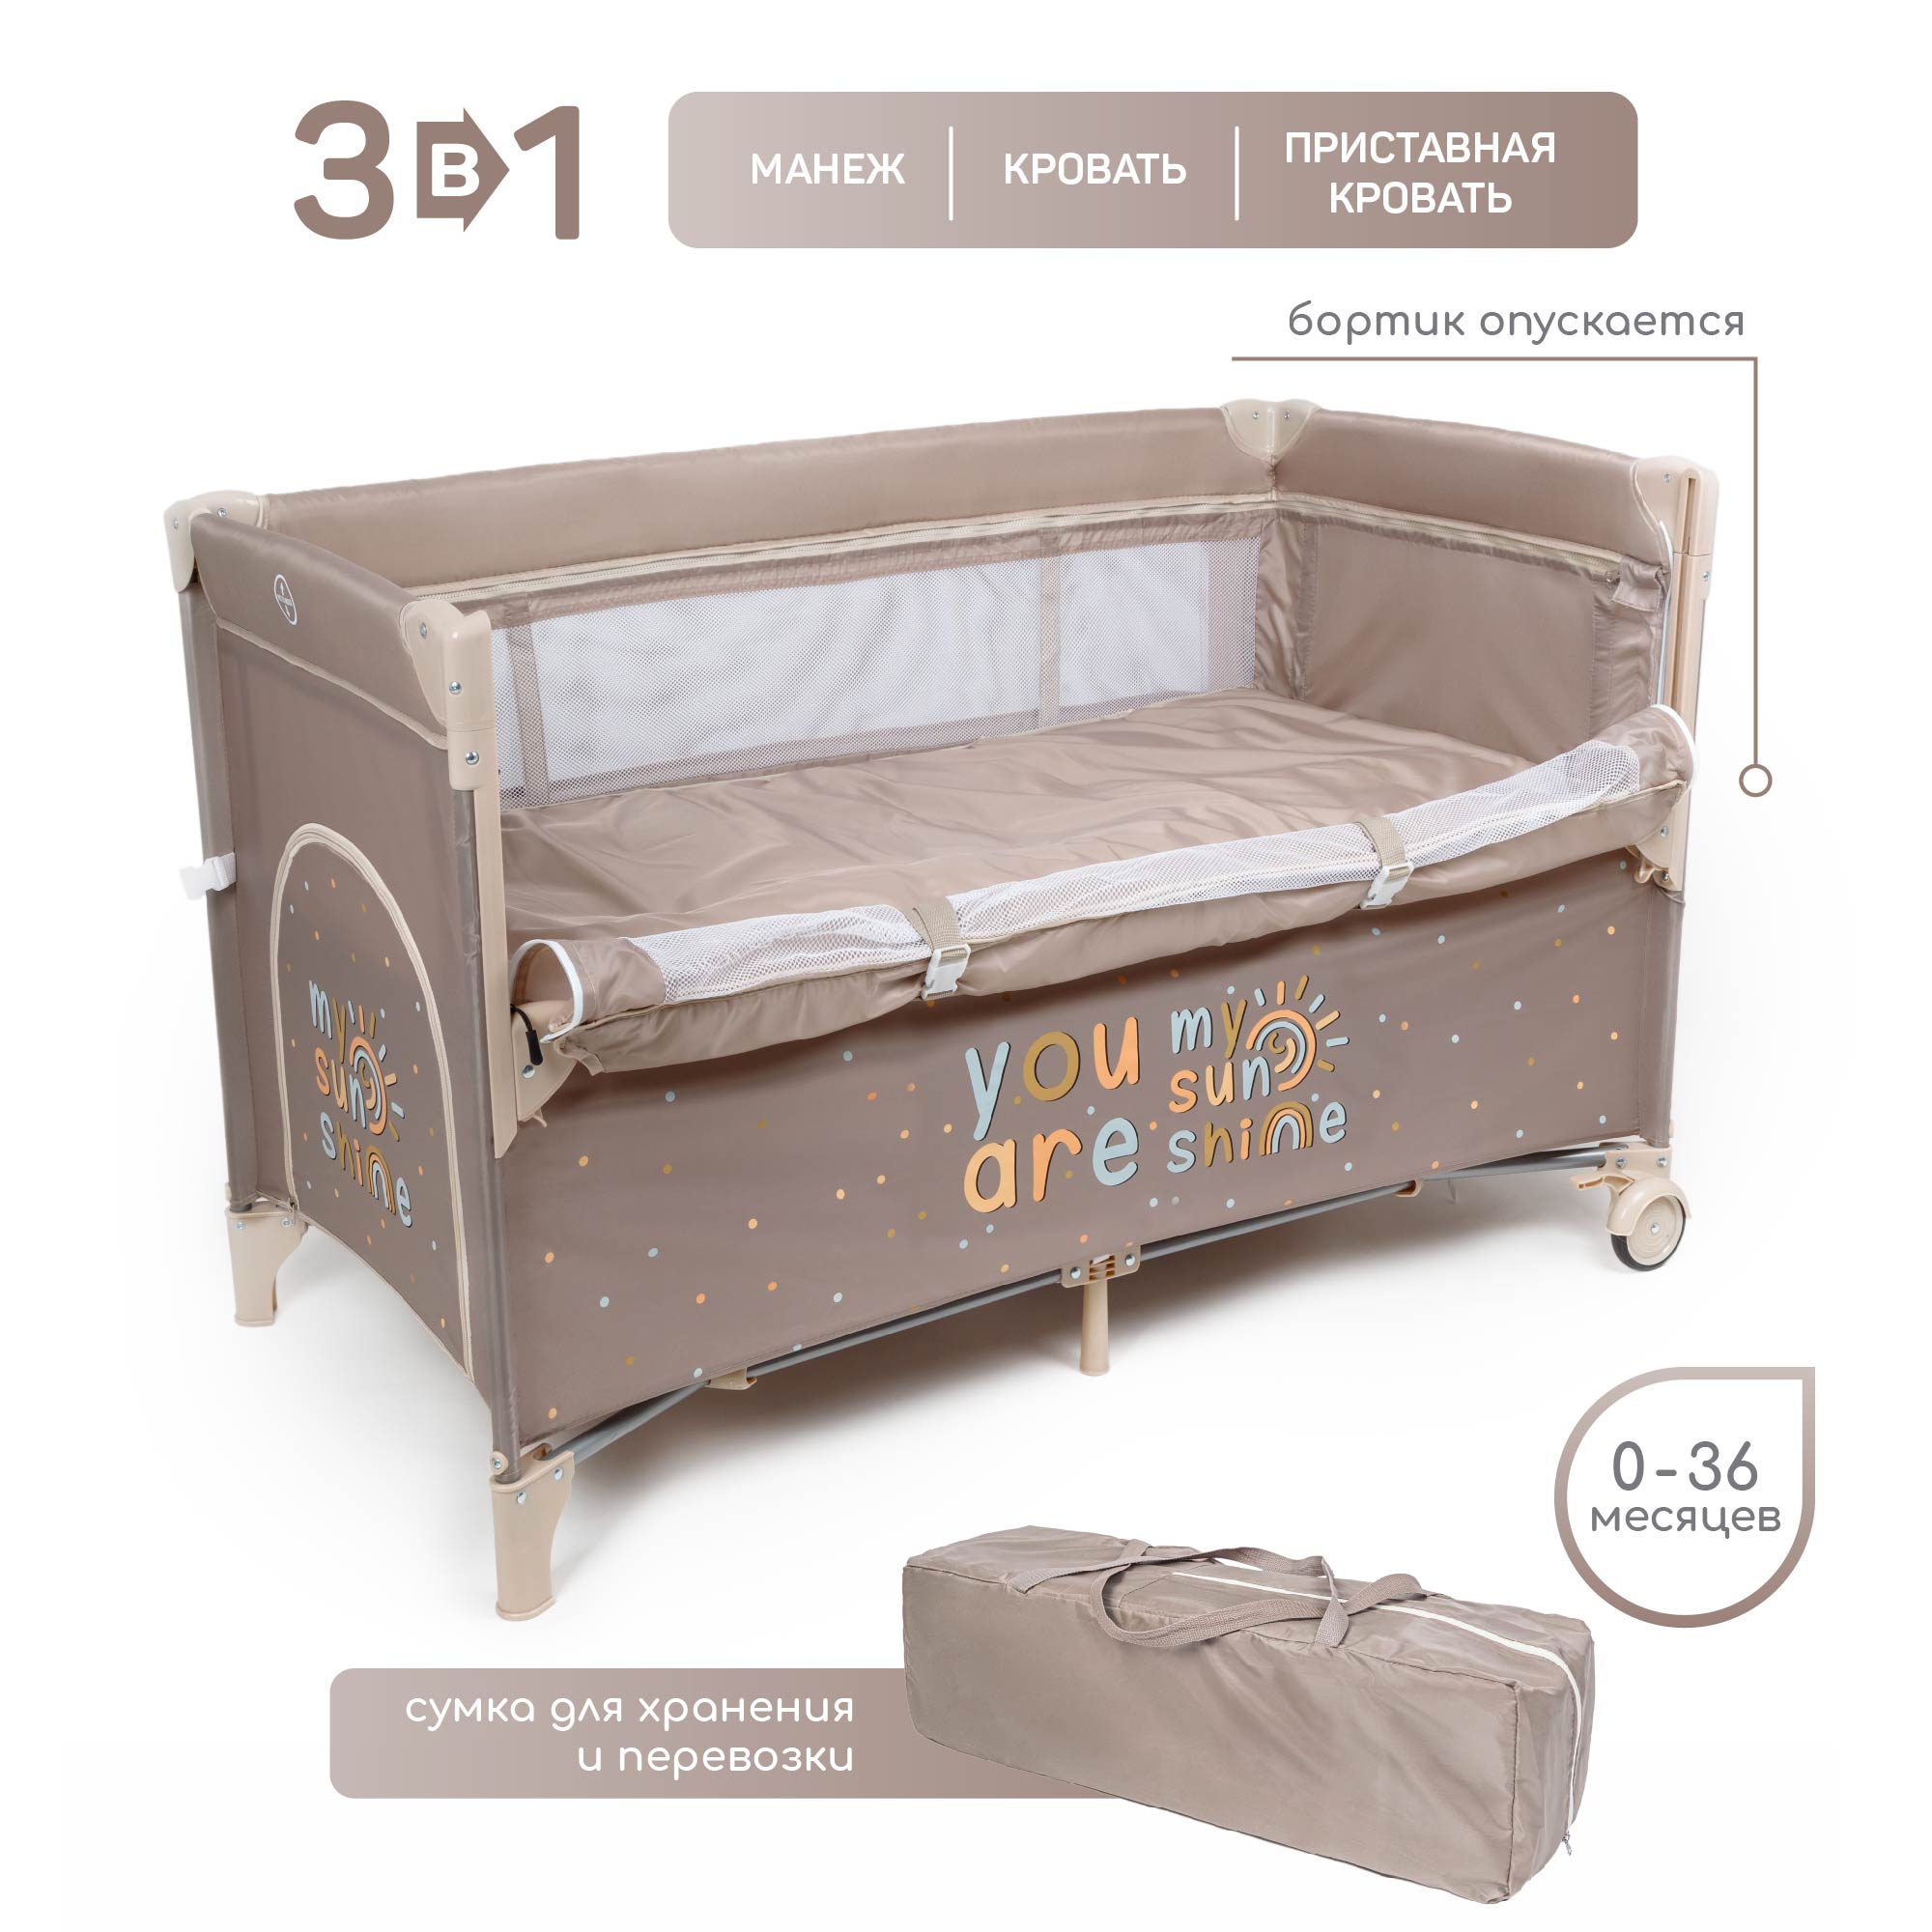 Манеж-кровать Amarobaby TRANSFORM Sunshine прямоугольный, коричневый манеж babycare babycare манеж arena коричневый коричневый